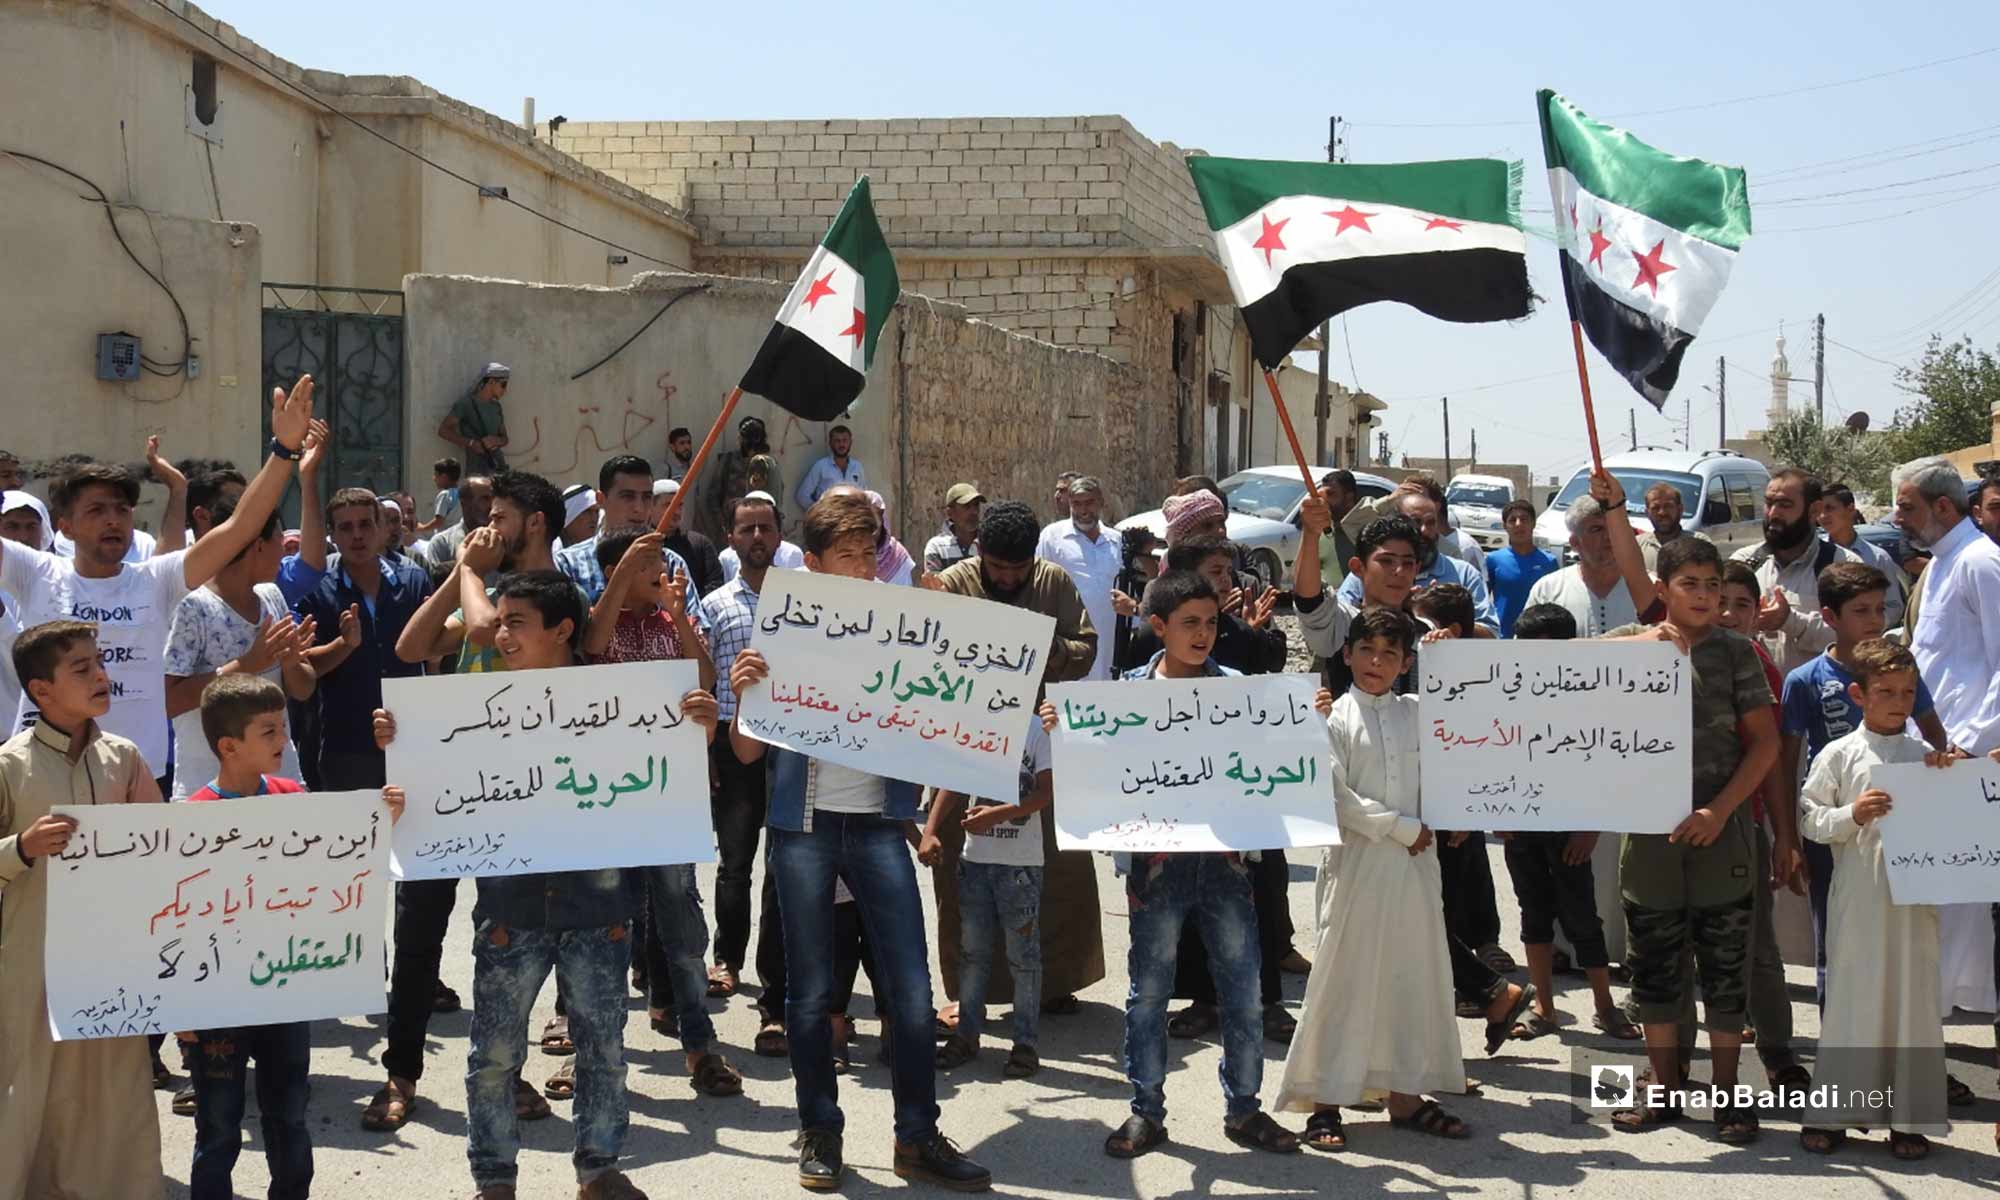 وقفة احتجاجية ضد الانتهاكات بحق المعقتلين السوريين في بلدة أخترين بريف حلب الشمالي - 3 من آب 2018 (عنب بلدي)